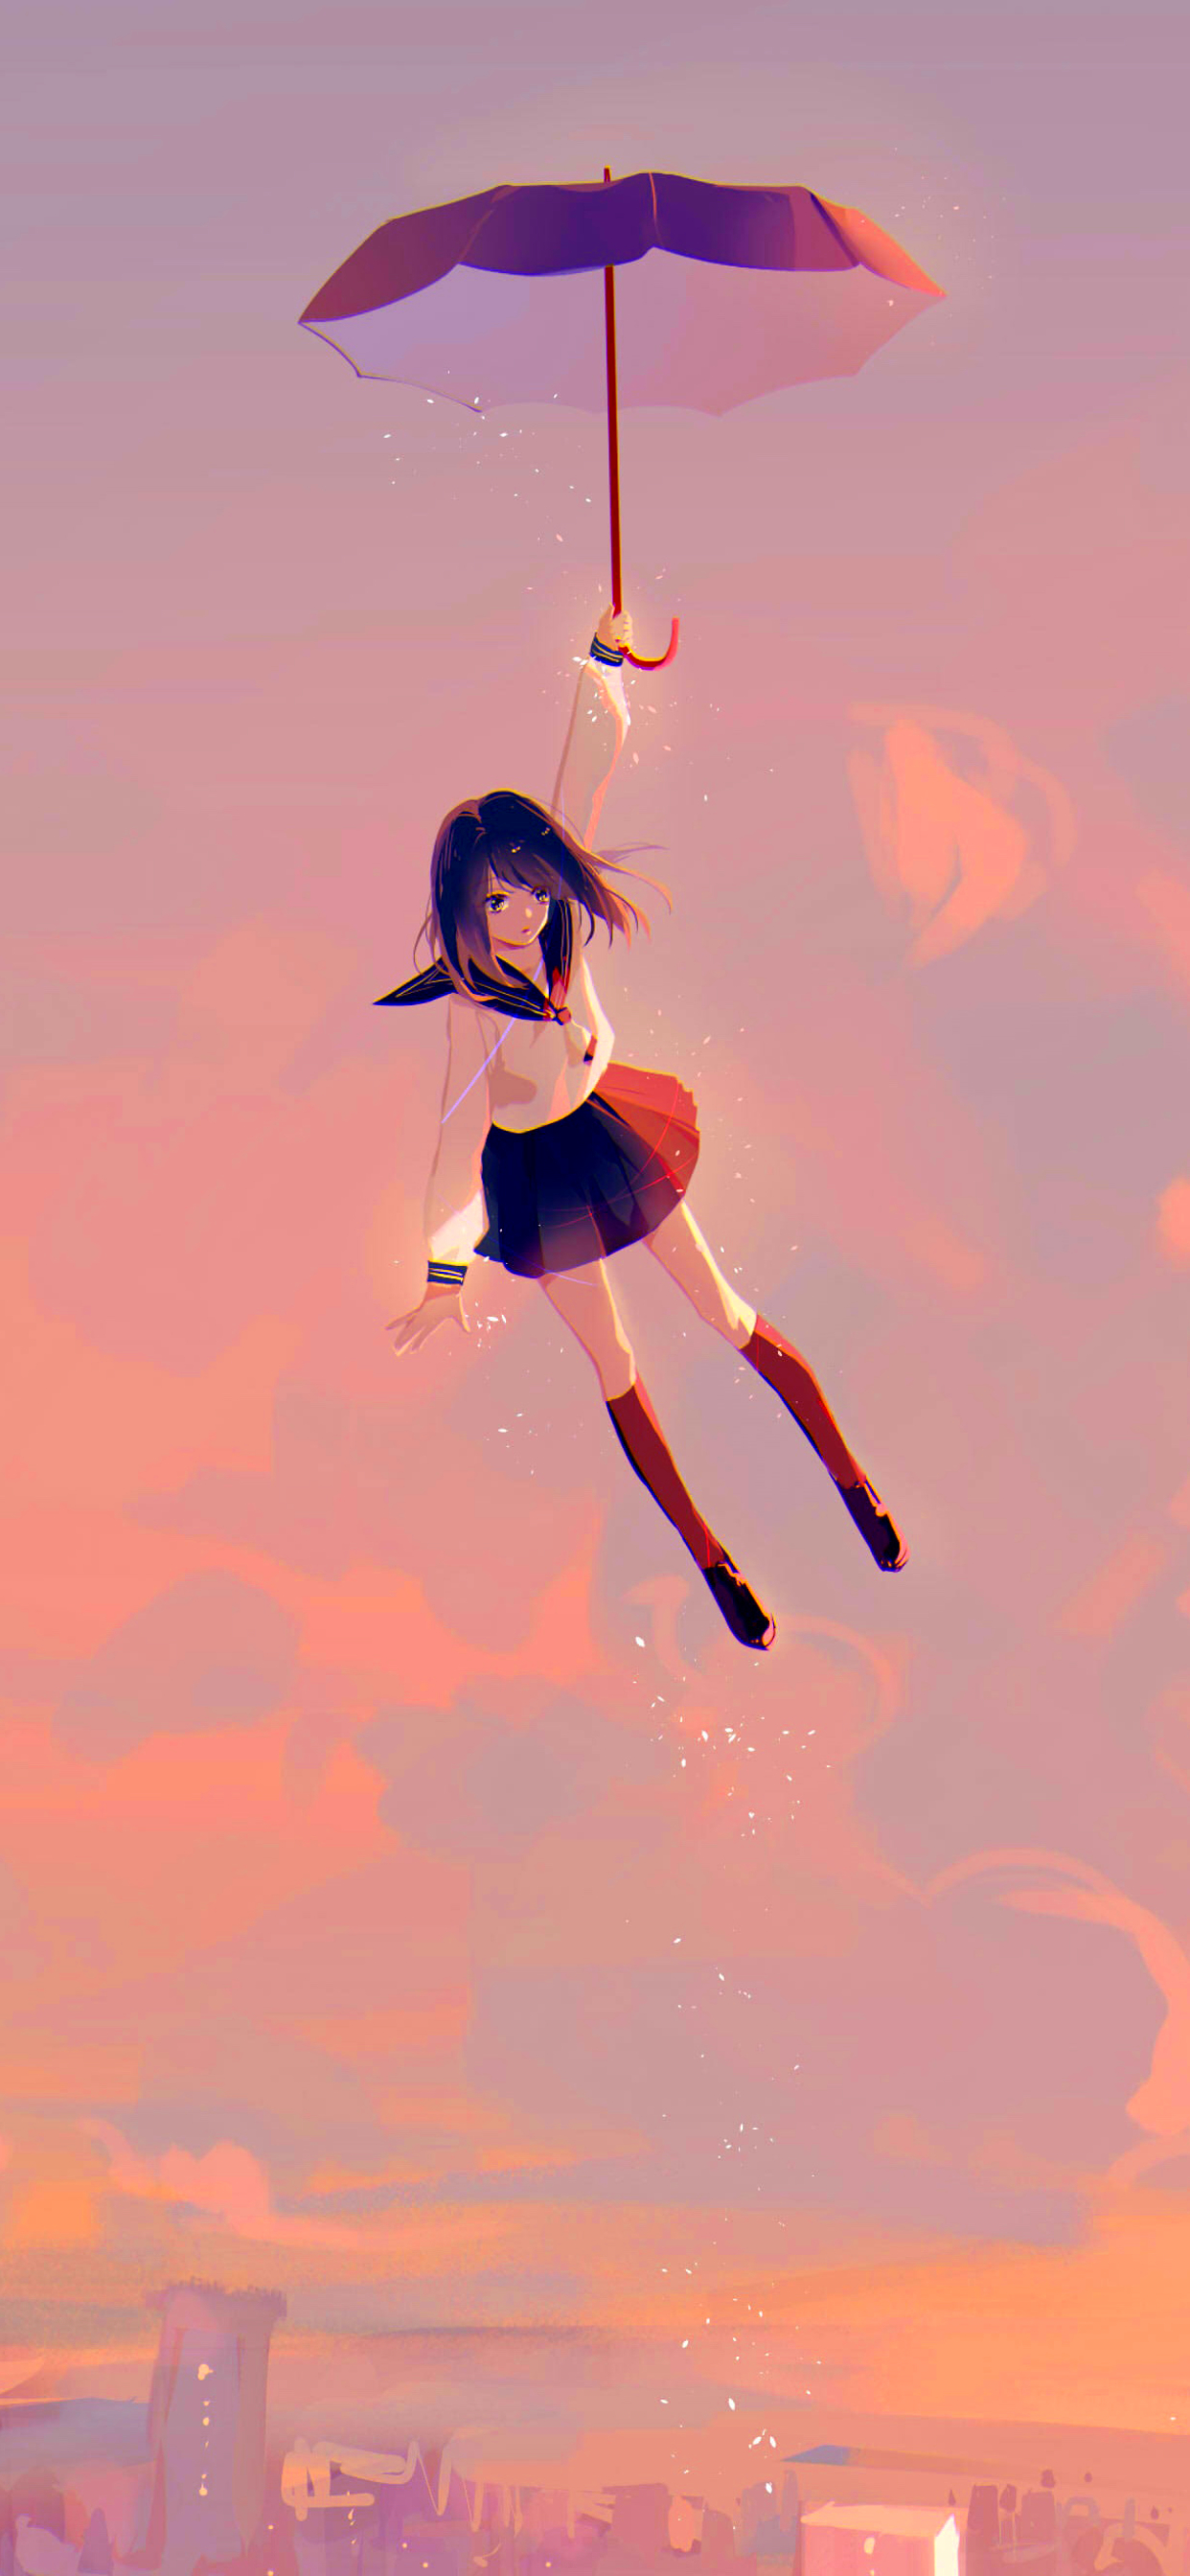 Скачать картинку Аниме, Девочка, Летающий в телефон бесплатно.